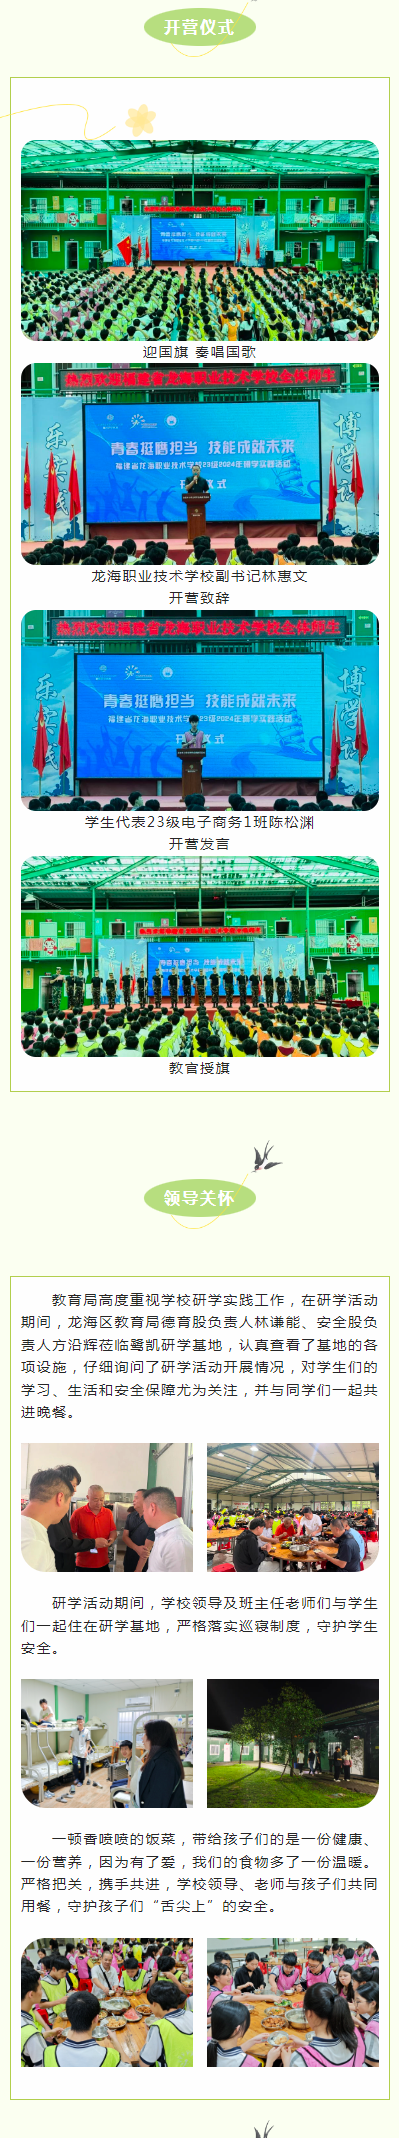 福建省龙海职业技术学校 